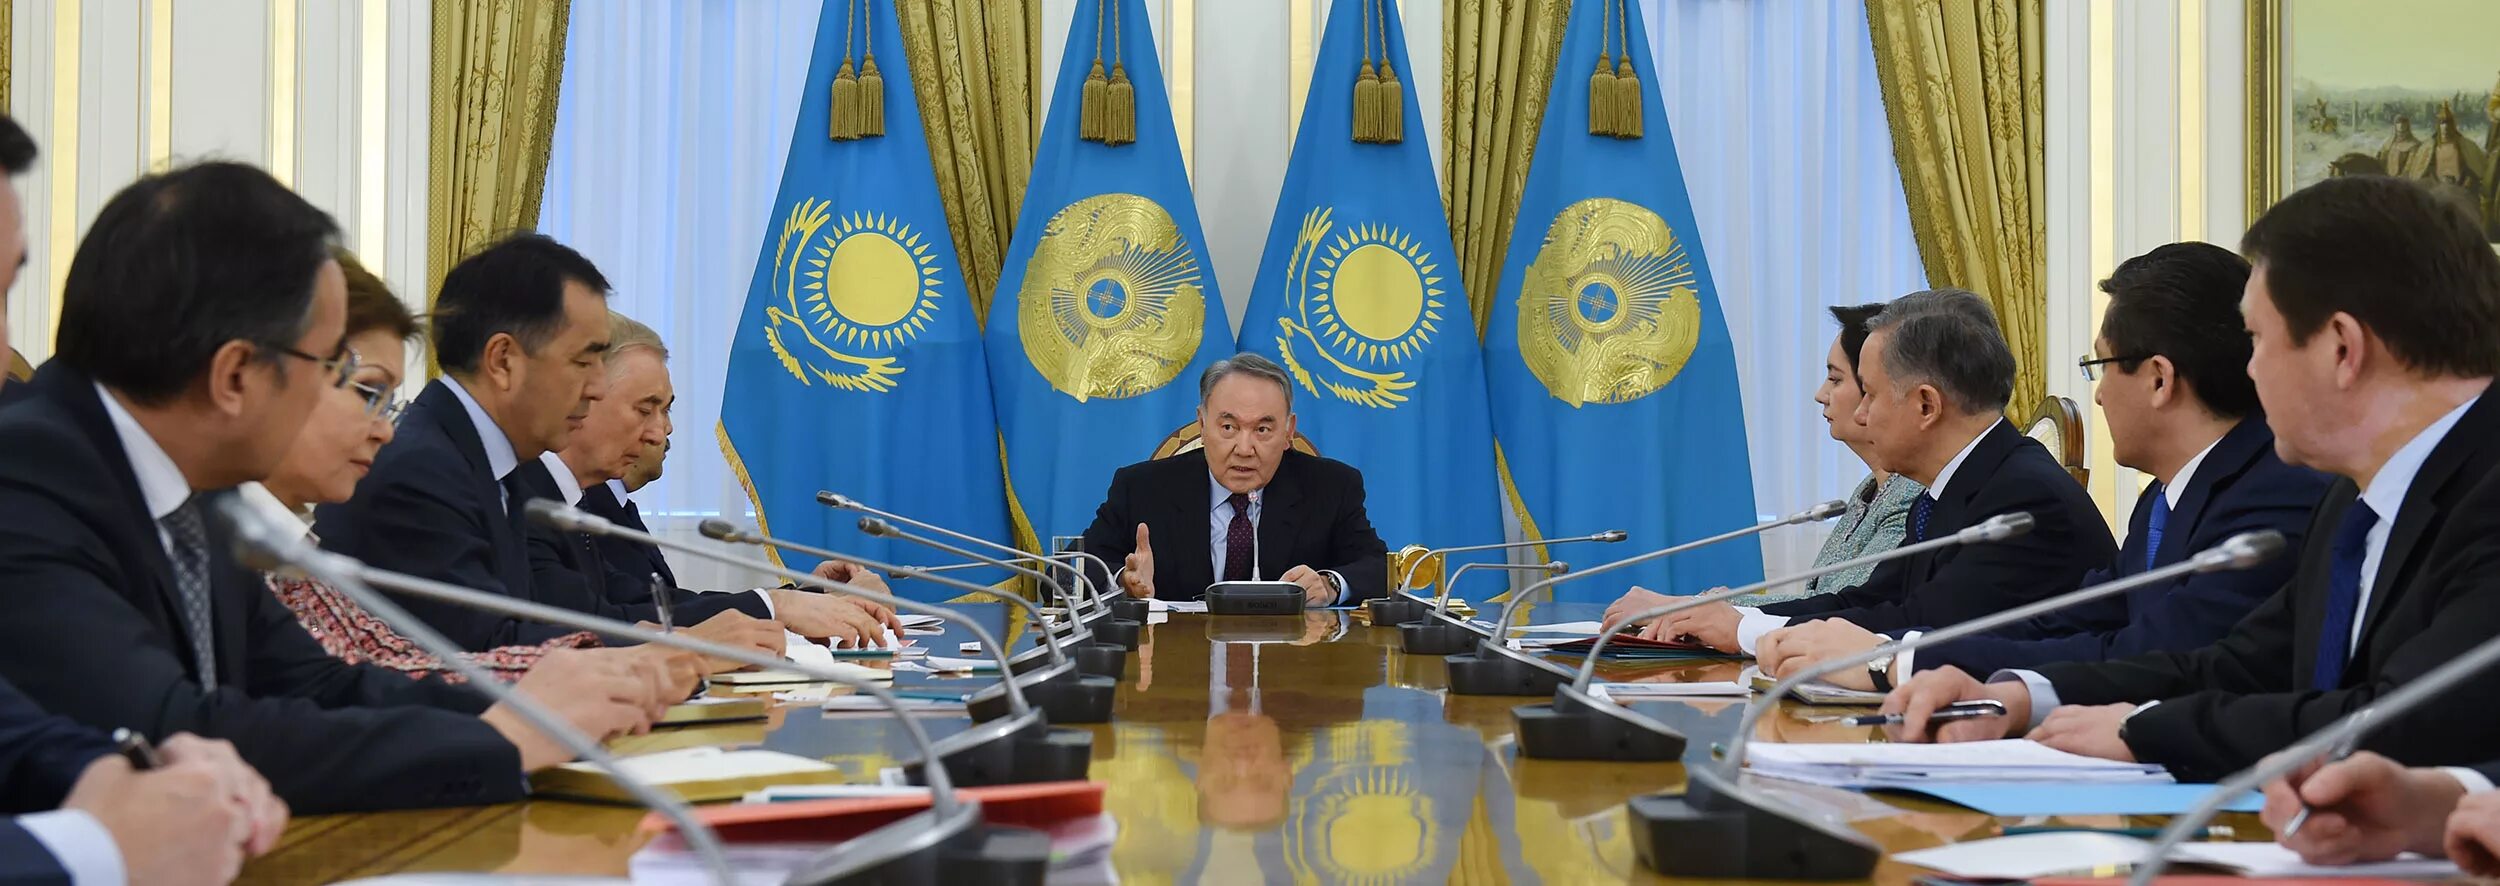 Назарбаев 2004. Парламент Казахстана и Назарбаев. Назарбаев 2006. Возрождение казахстана